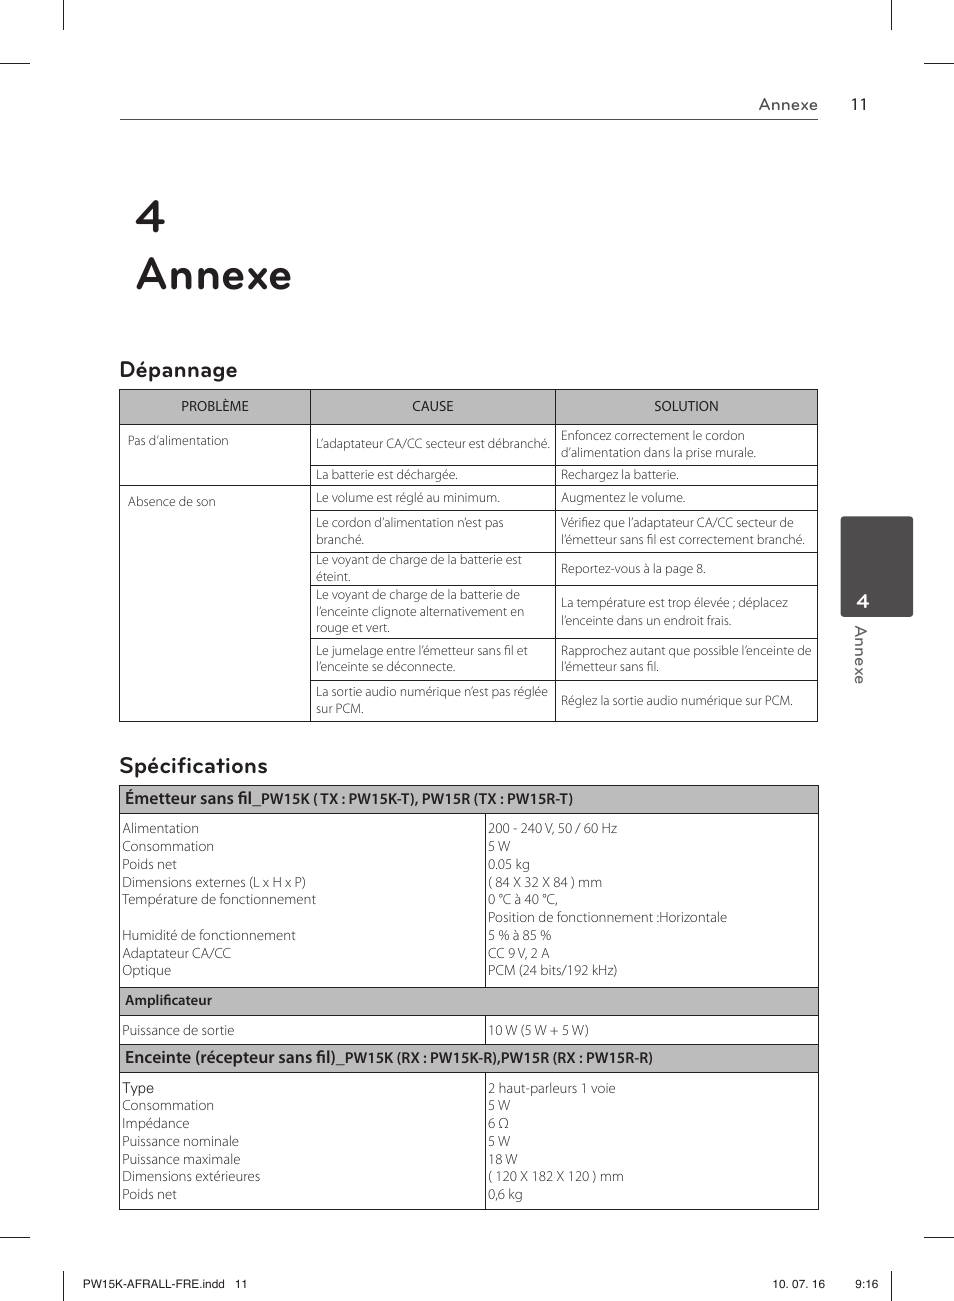 4 annexe, Dépannage, Spéciﬁ cations | LG PW15K Manuel d'utilisation | Page 11 / 12